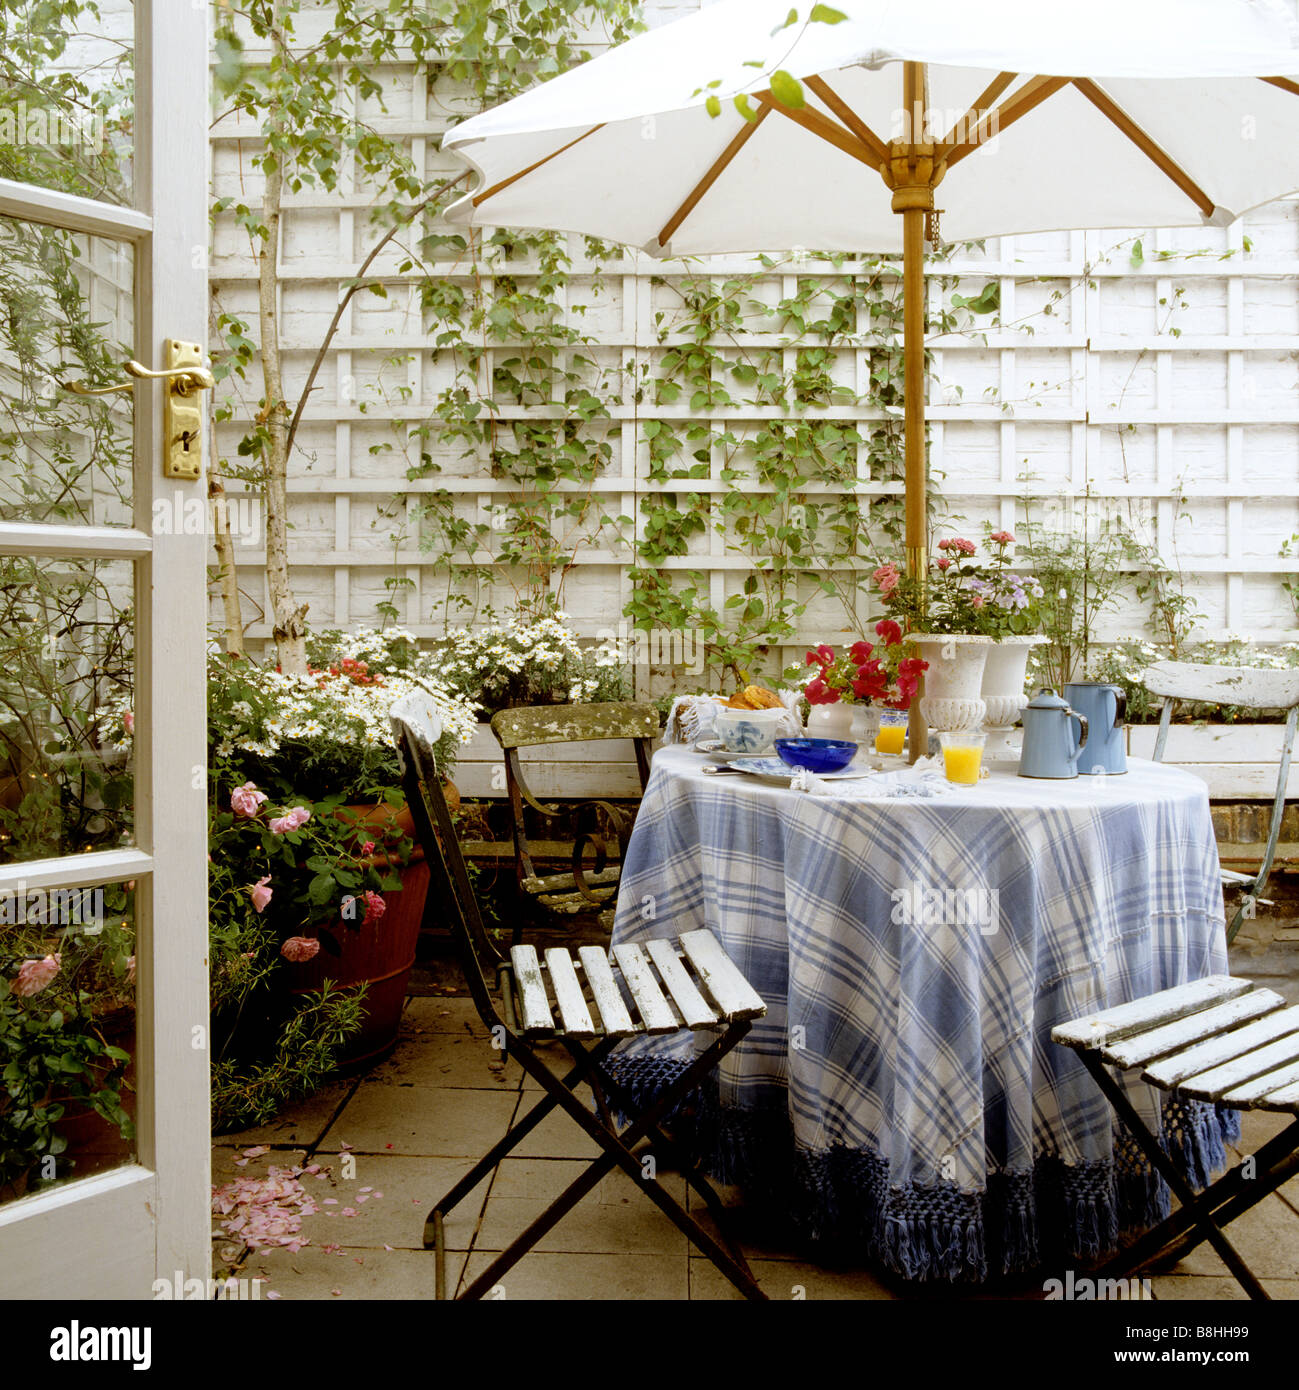 Frühstückstisch mit blau und weiß kariert und Tischdecke mit Fransen und französischen Eisen Café Stühle in einem London-Terrasse-Garten Stockfoto